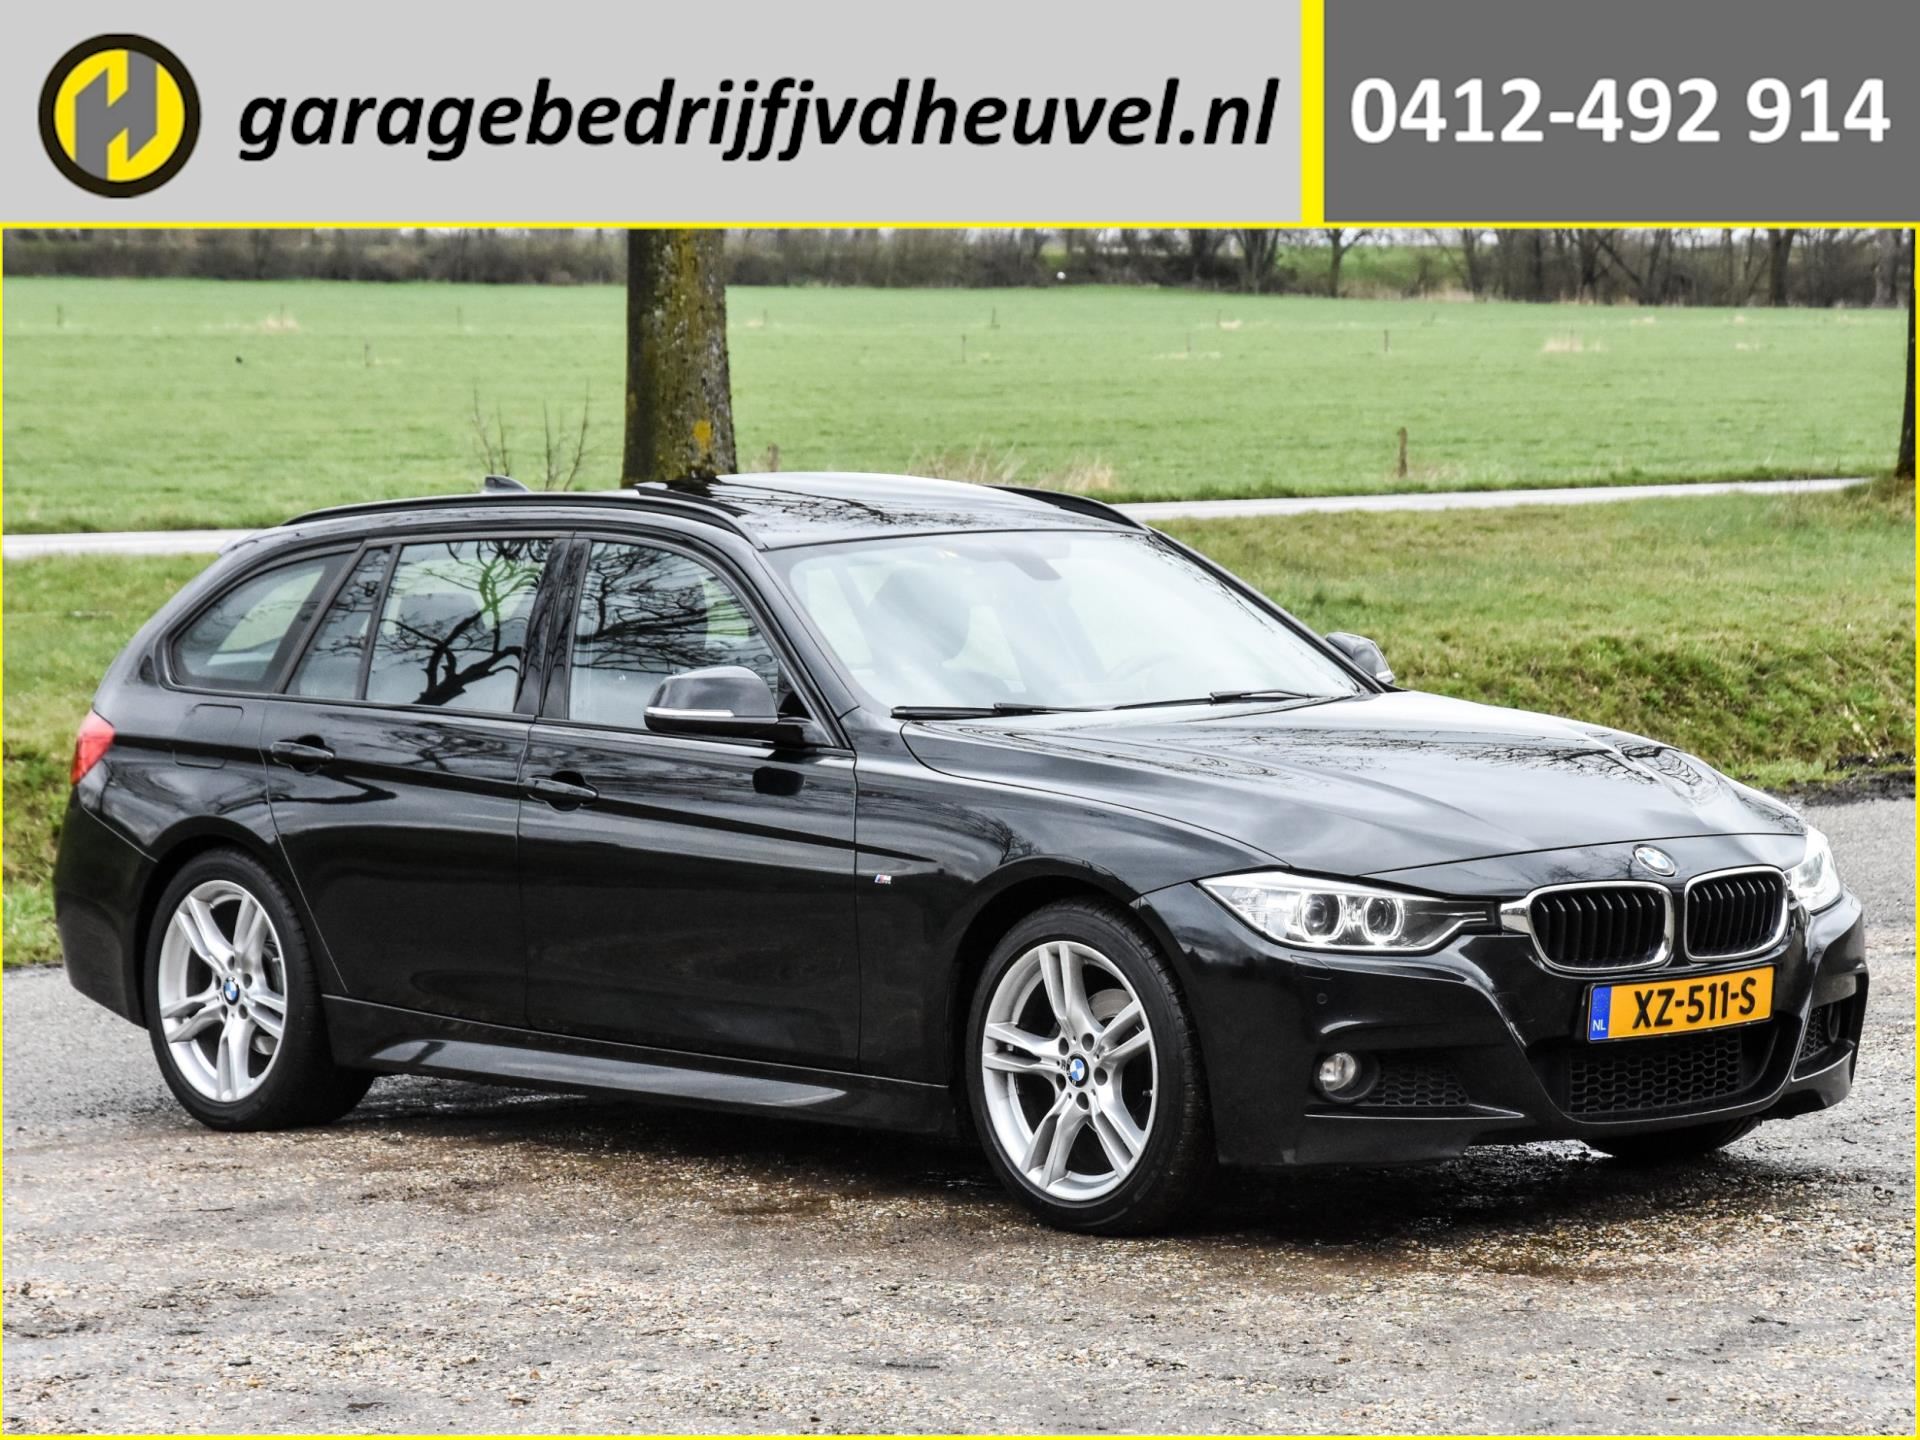 Tolk verf Omgeving BMW 3-serie Touring - 318d M Sport Edition High Executive / Bel voor een  afspraak! / panoramadak / zwart leer / sportstoelen Diesel uit 2015 -  www.garagebedrijfjvdheuvel.nl